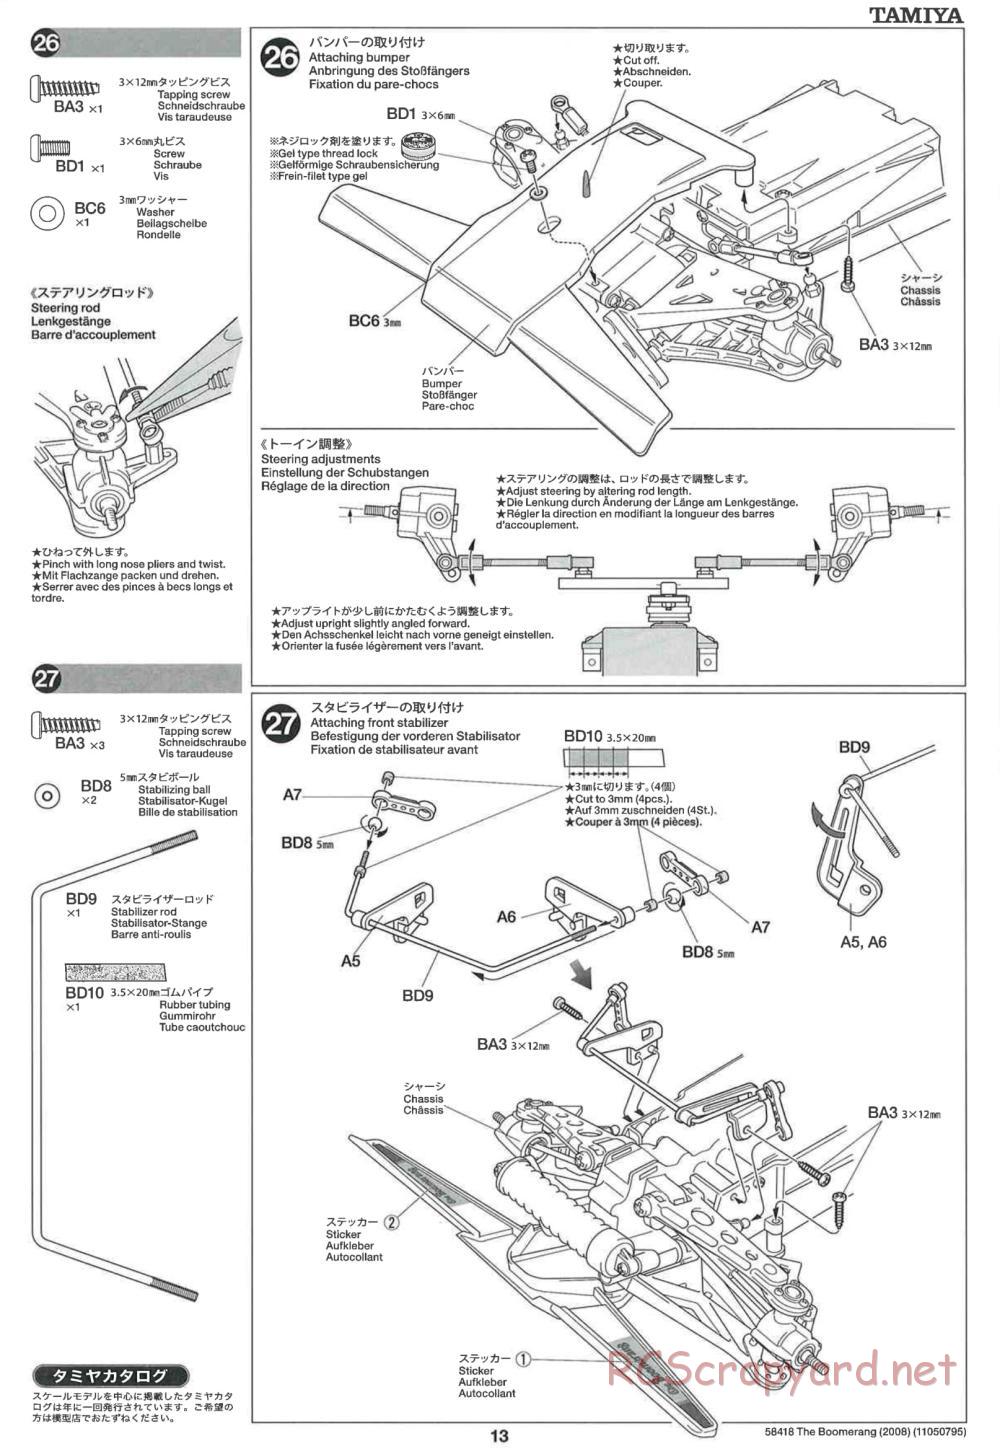 Tamiya - The Boomerang 2008 Chassis - Manual - Page 13